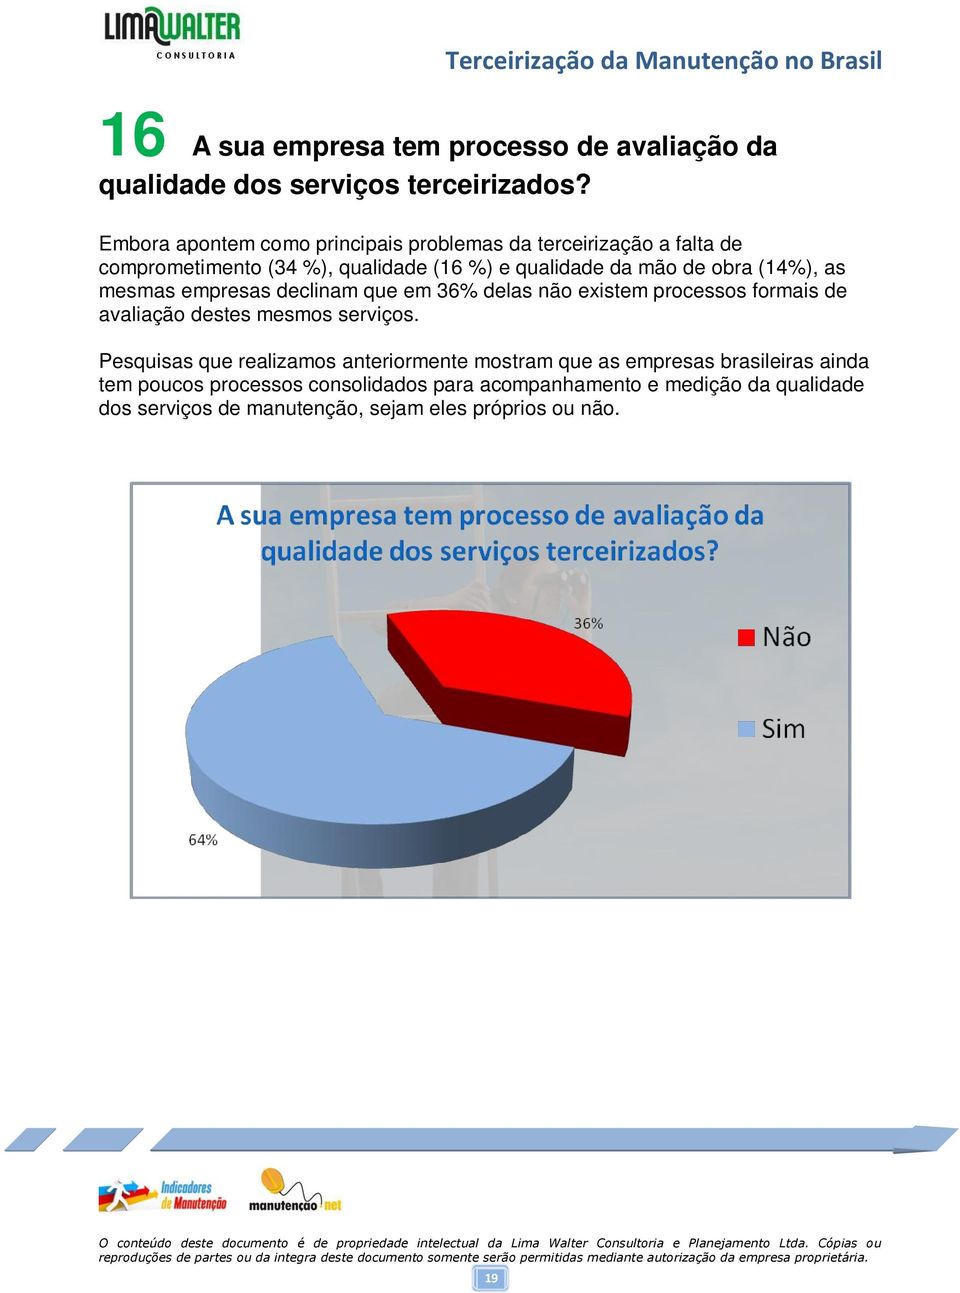 (14%), as mesmas empresas declinam que em 36% delas não existem processos formais de avaliação destes mesmos serviços.